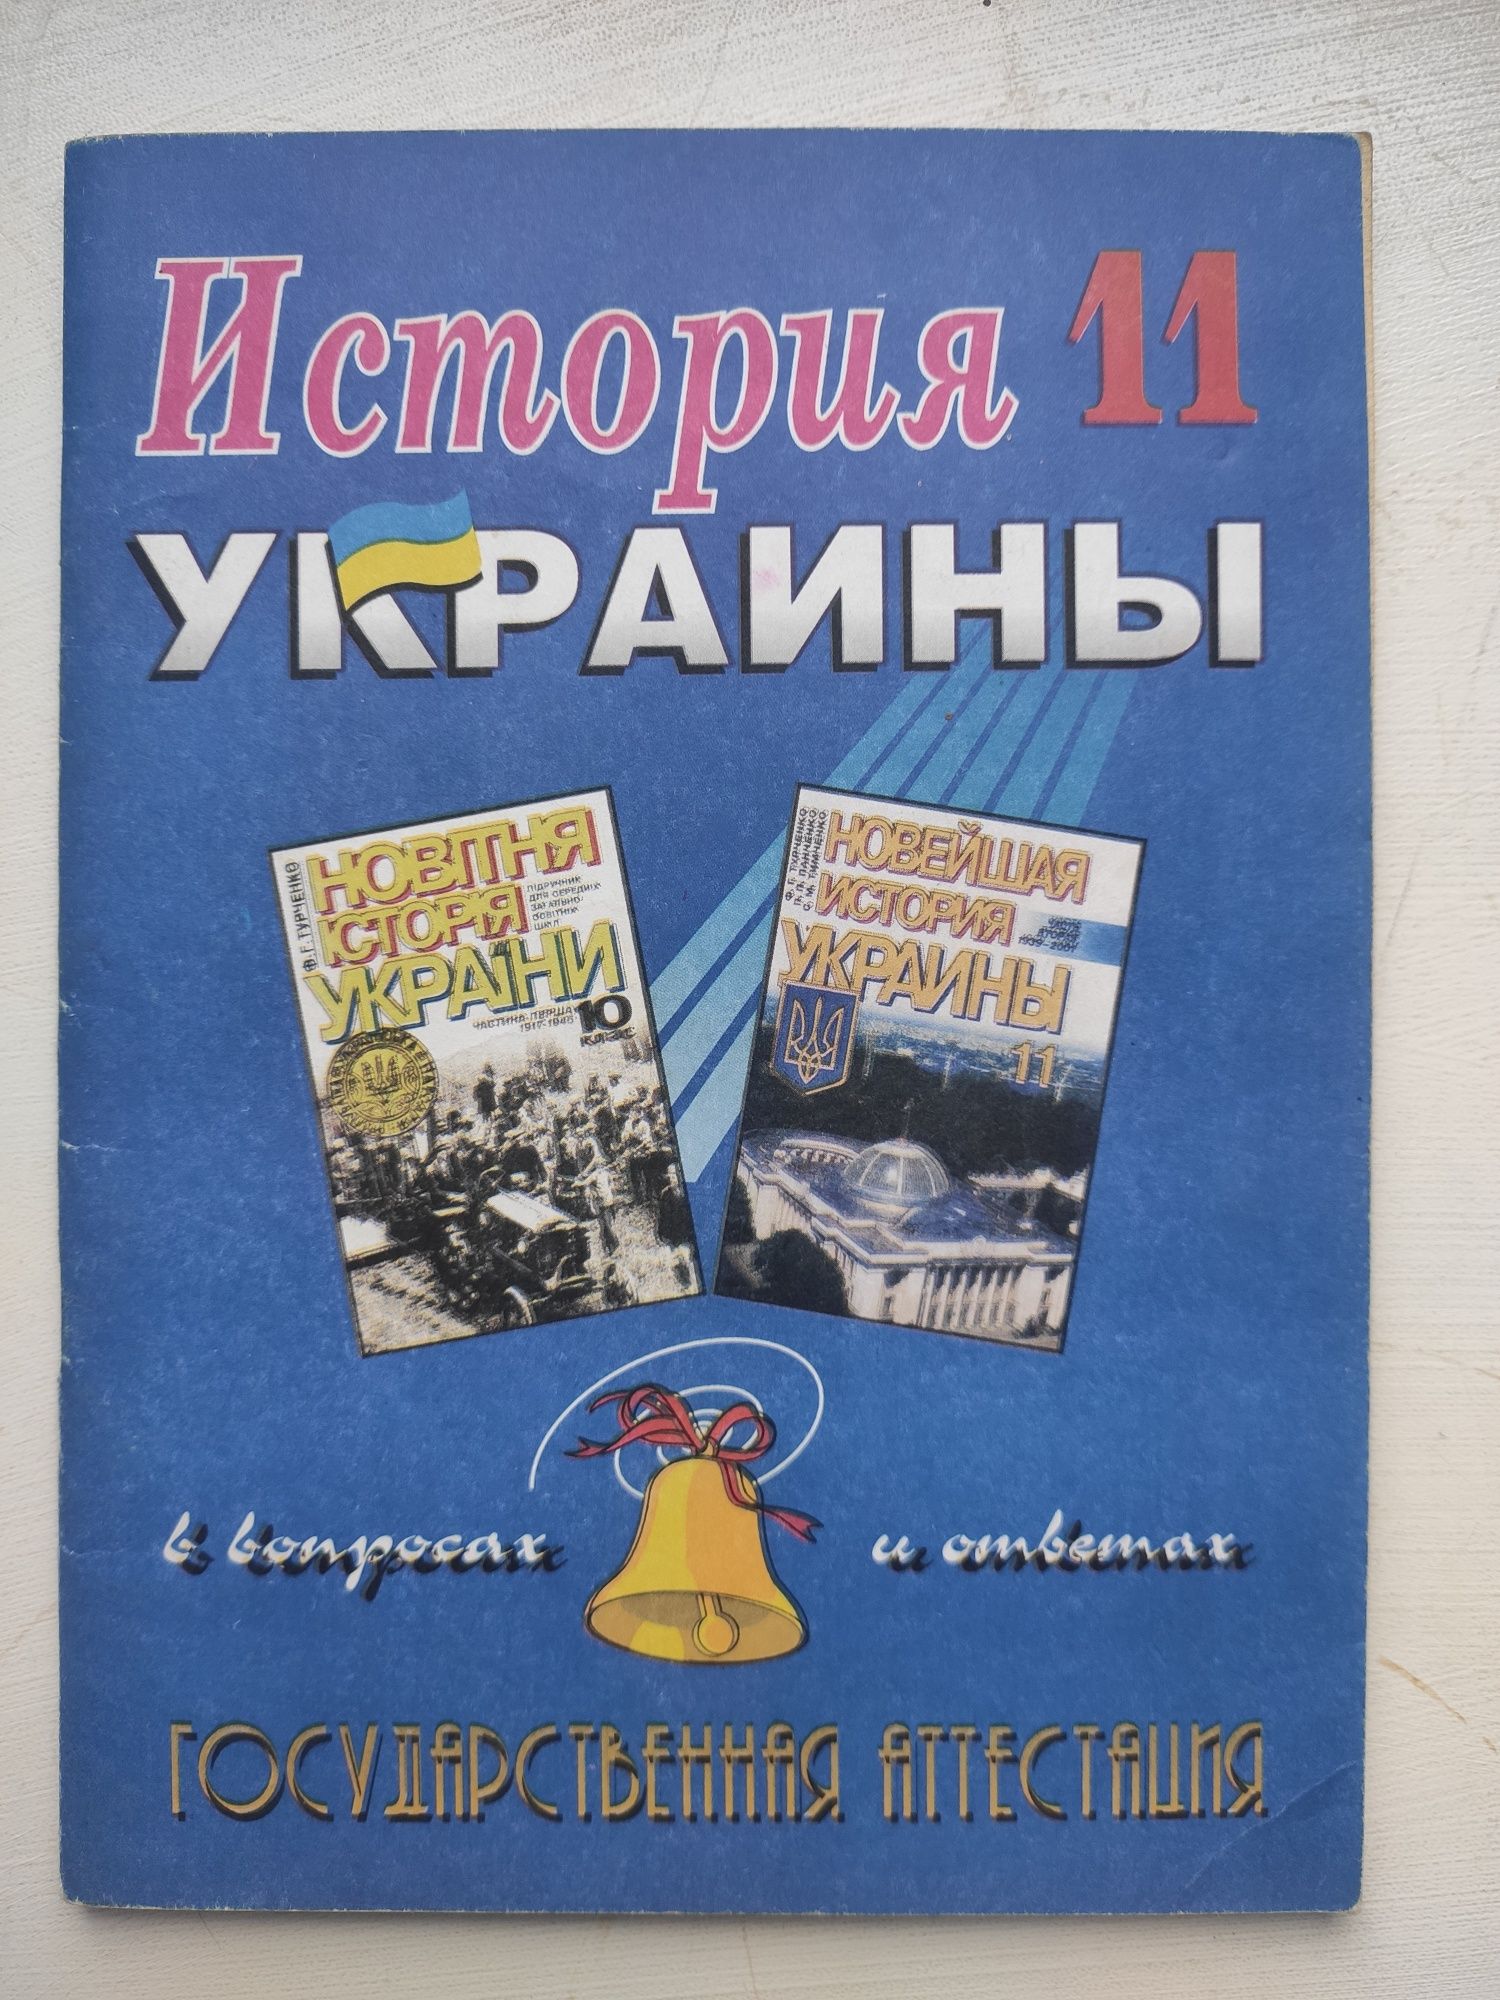 Учебники по экономической теории, финансовому анализу, истории Украины